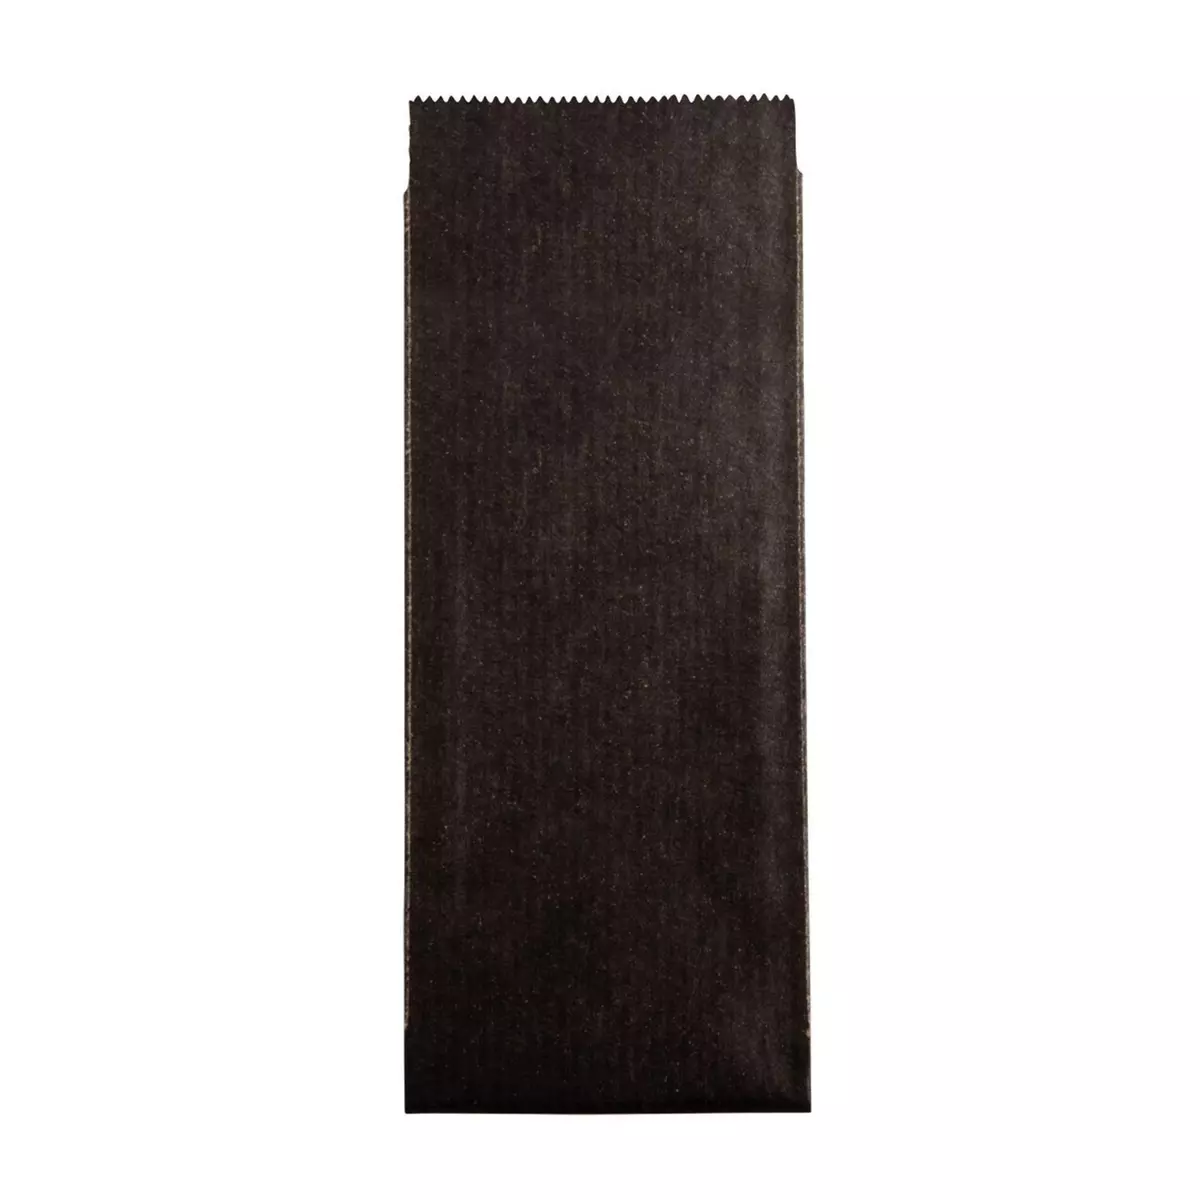 Rayher Sac déco en papier - Cadeau - Friandises - Noir - 11,5 x 5,3 cm